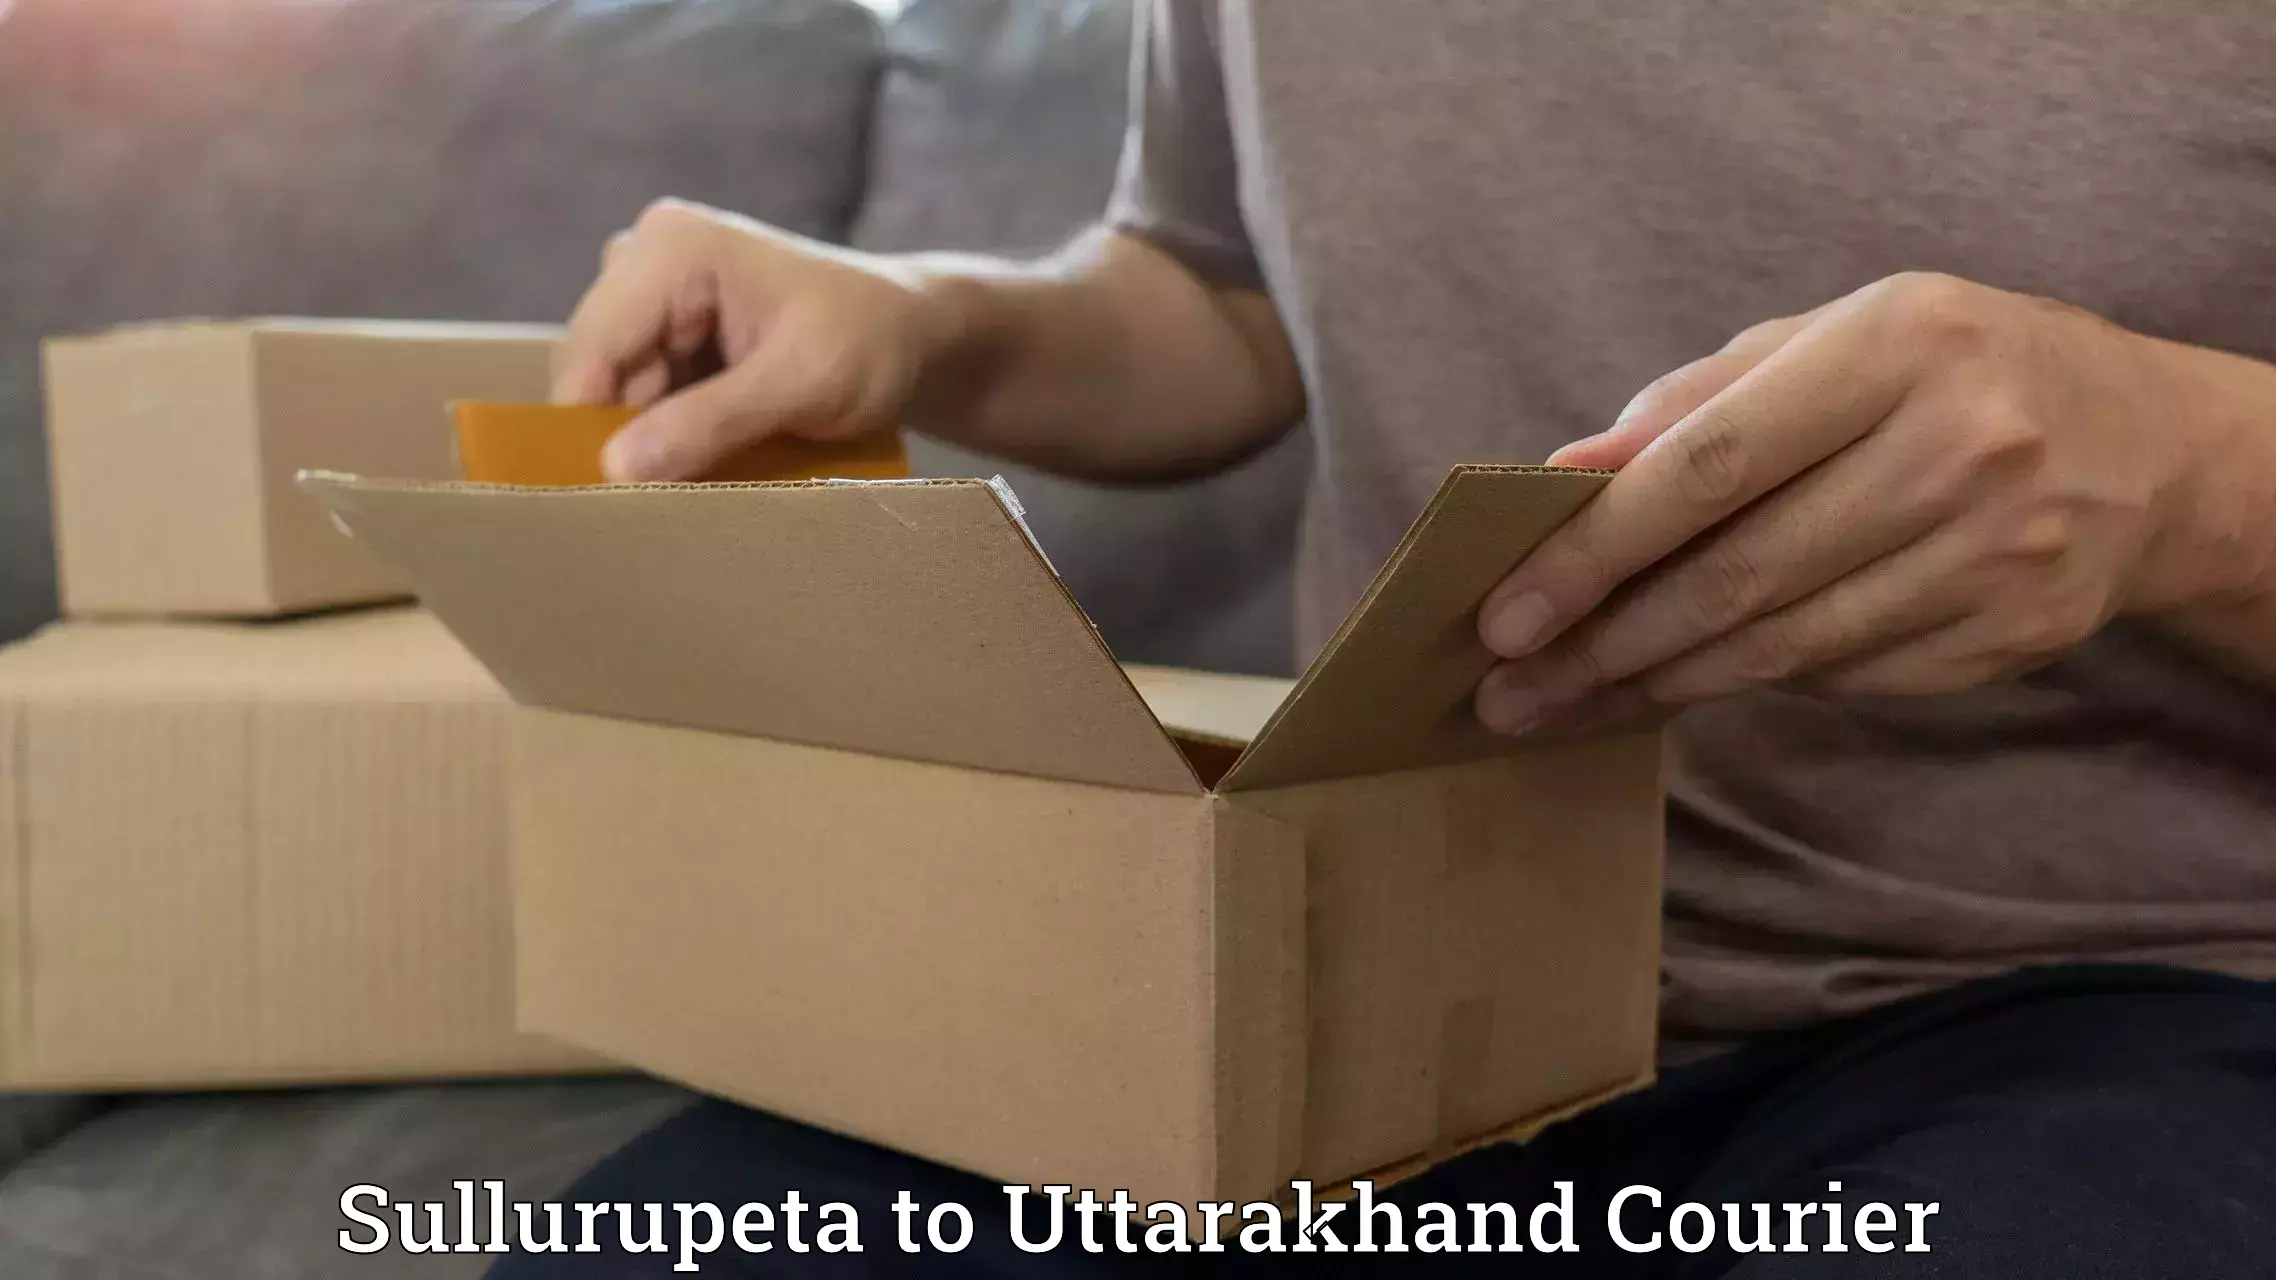 Urgent courier needs Sullurupeta to Rudrapur